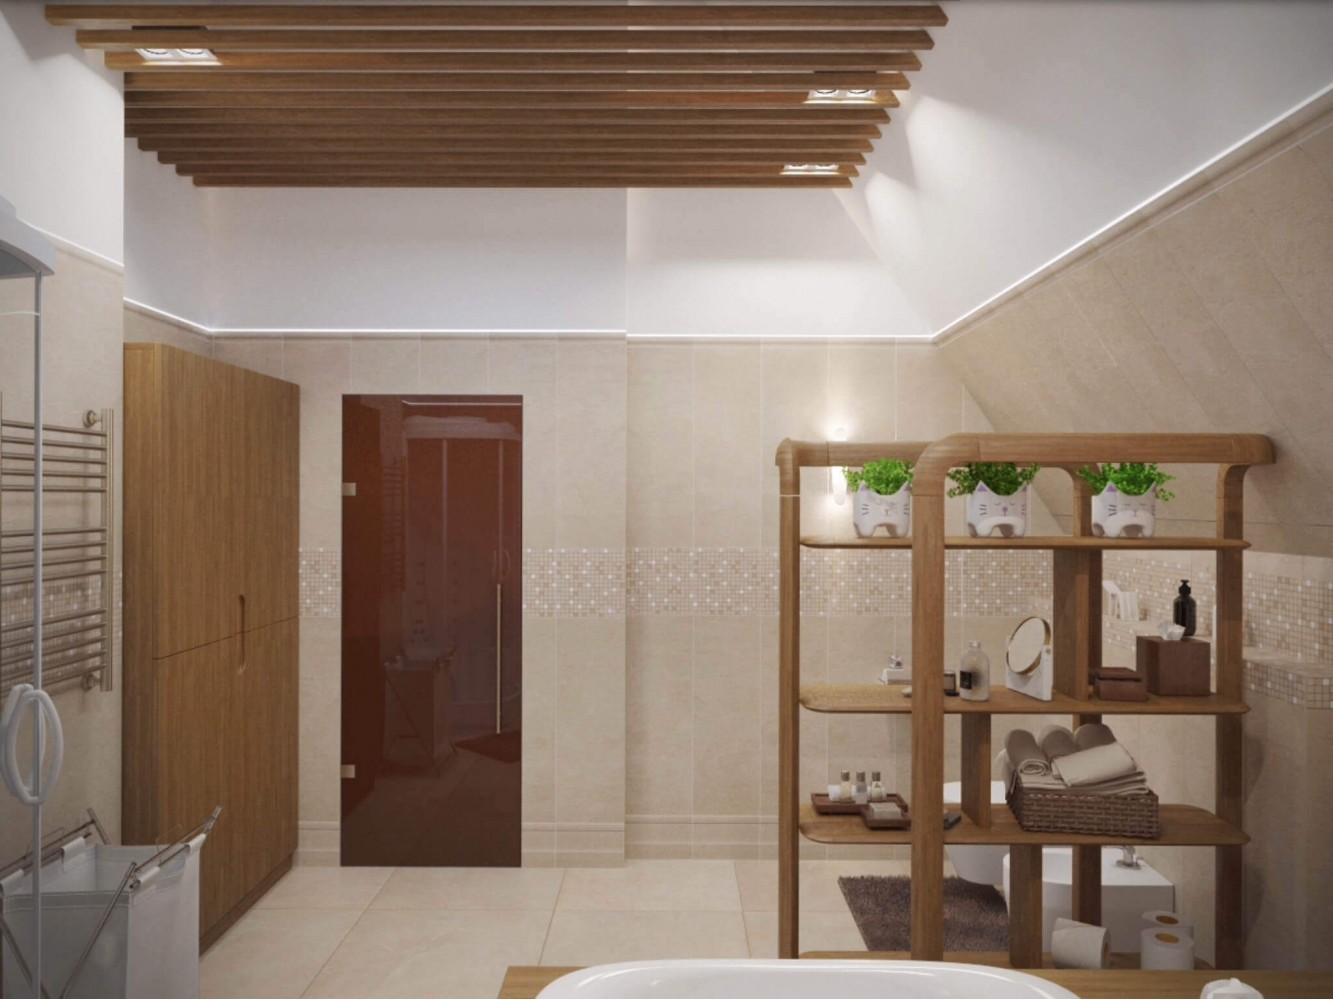 Санузел в дизайн-проекте двухэтажного коттеджа ЖК Белый шоколад-Villago, 200 м.кв. —  студия дизайна HD-DESIGN